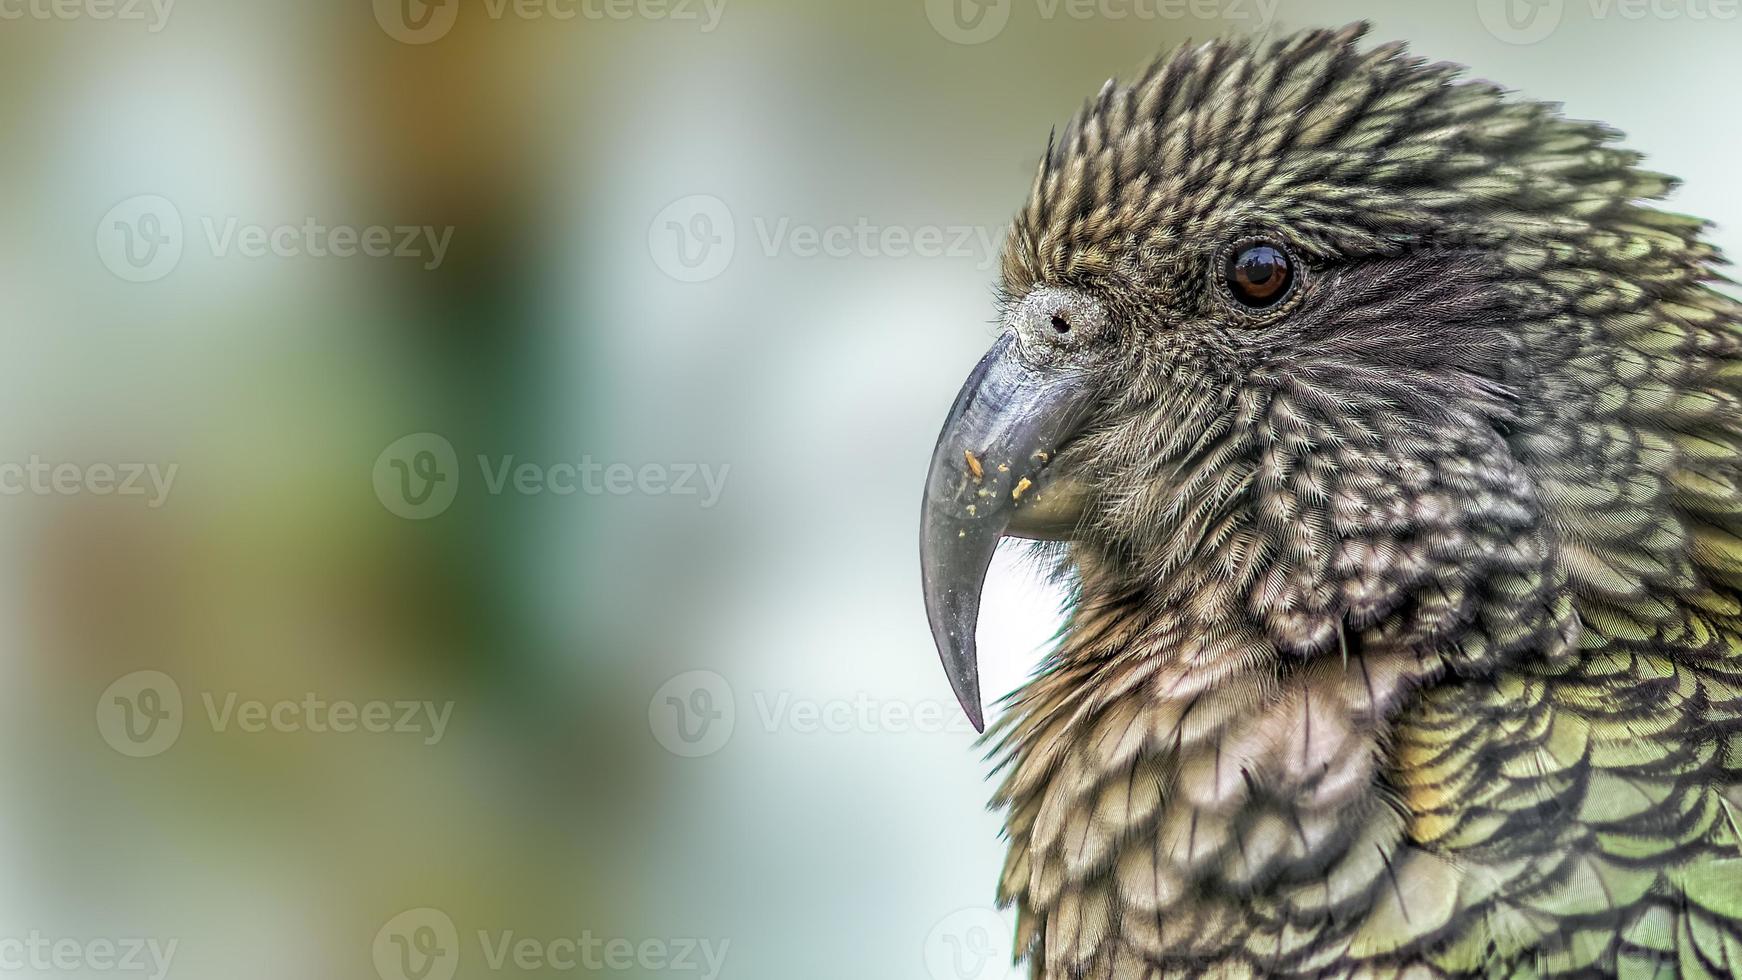 retrato do papagaio kea (nestor notabilis) (versão cortada). foto